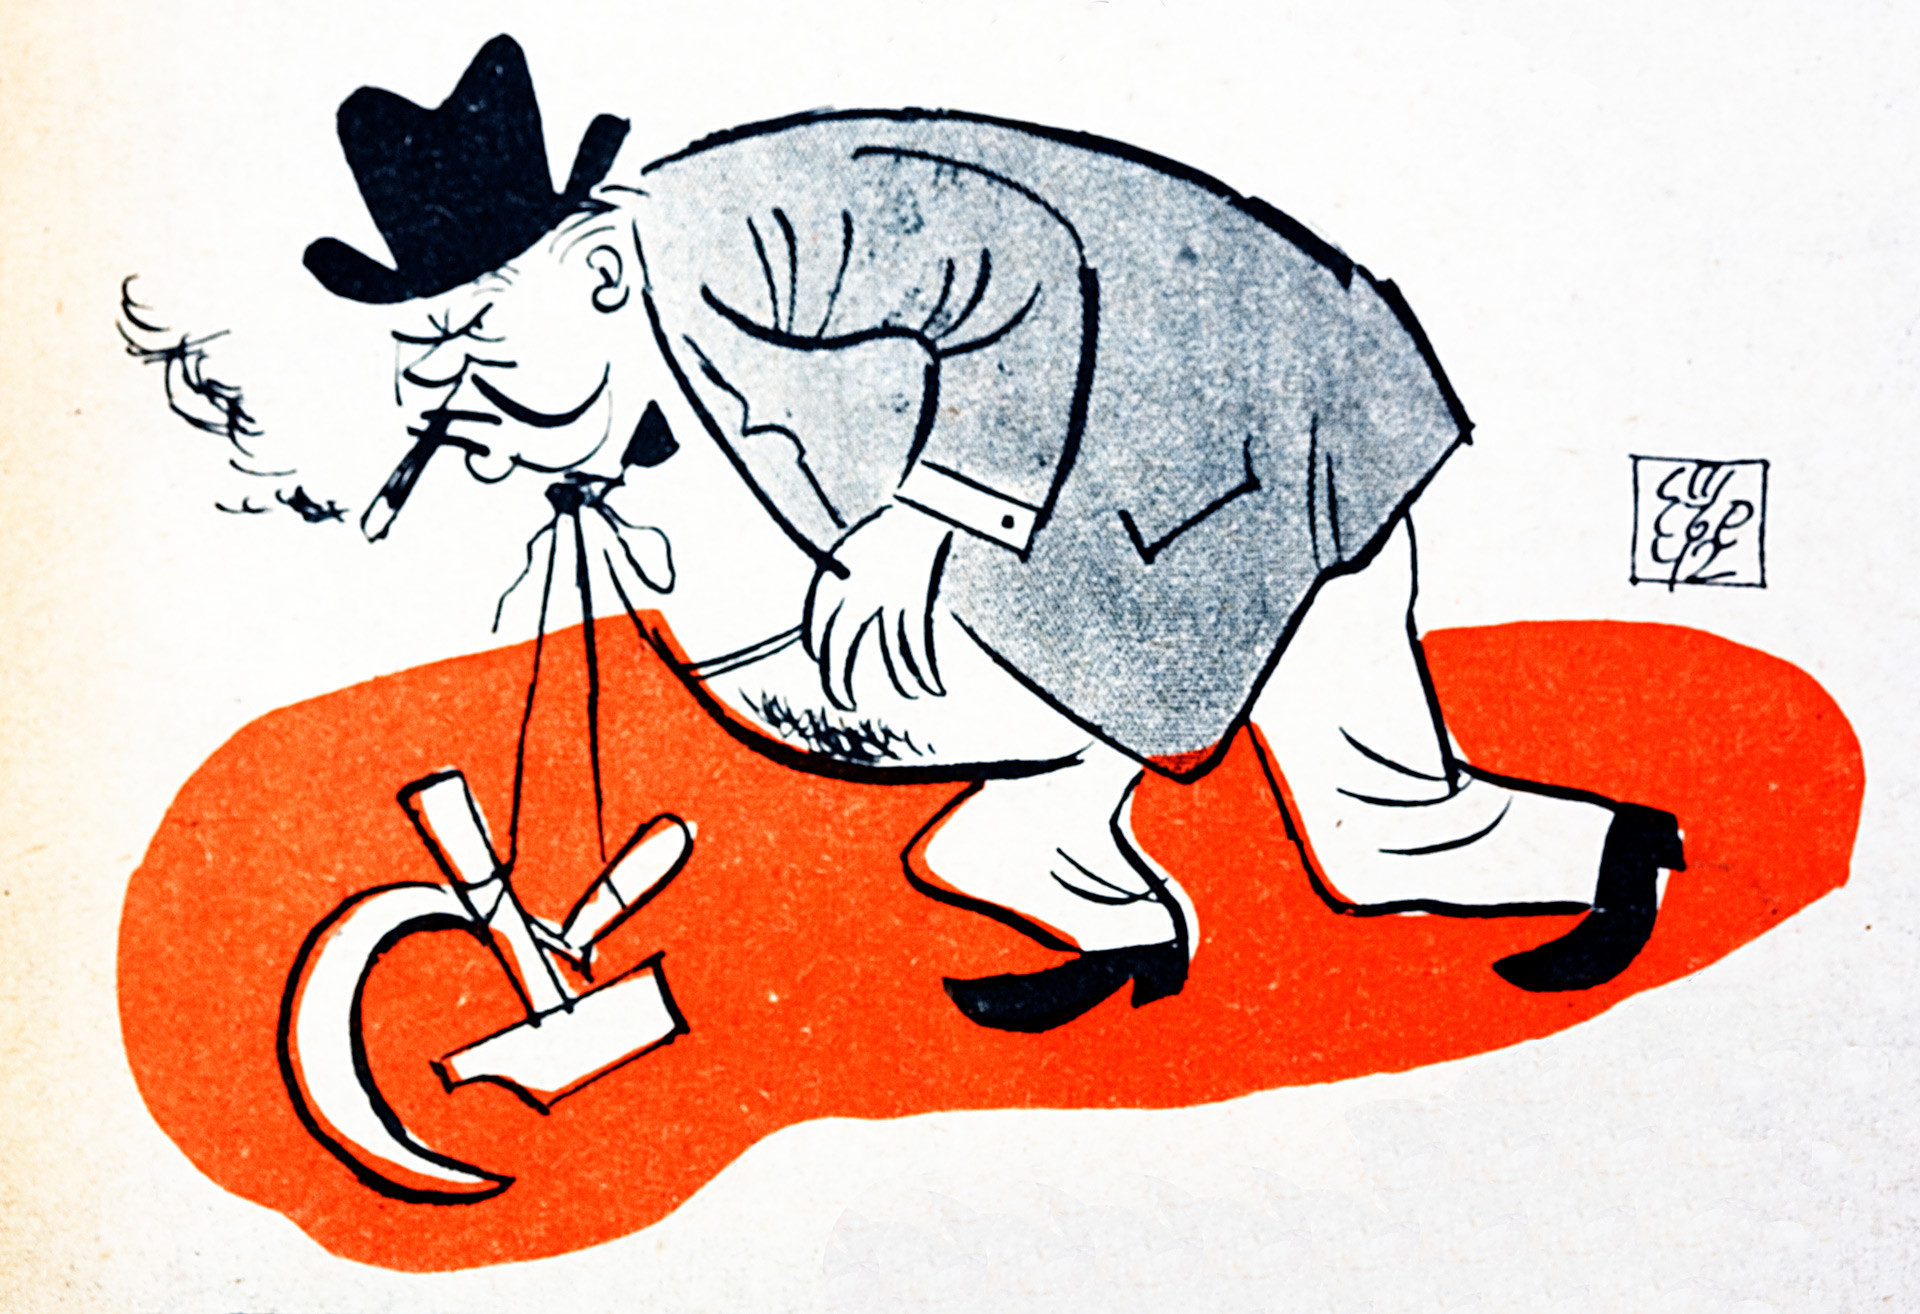 Карикатура на Чърчил със сърп и чук, символизираща съюза с Русия. Взета от българско про-нацистко издание от перода преди преминаването на България на страната на СССР през ВСВ